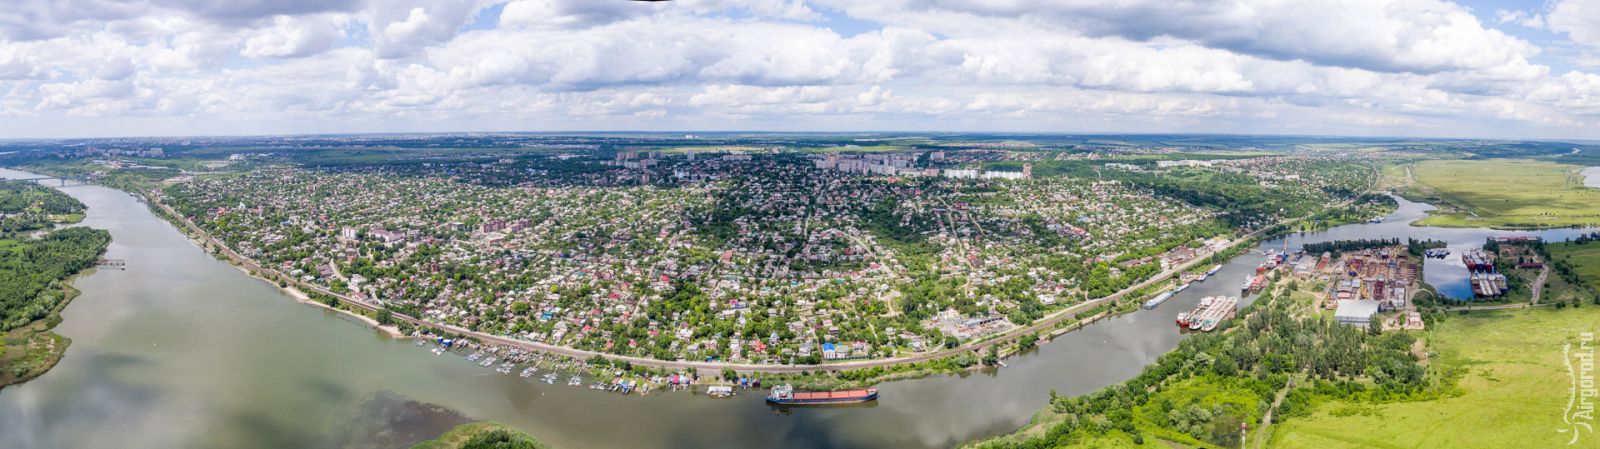 Город Аксай вошел в топ-10 малых городов России с самым высоким качеством городской среды